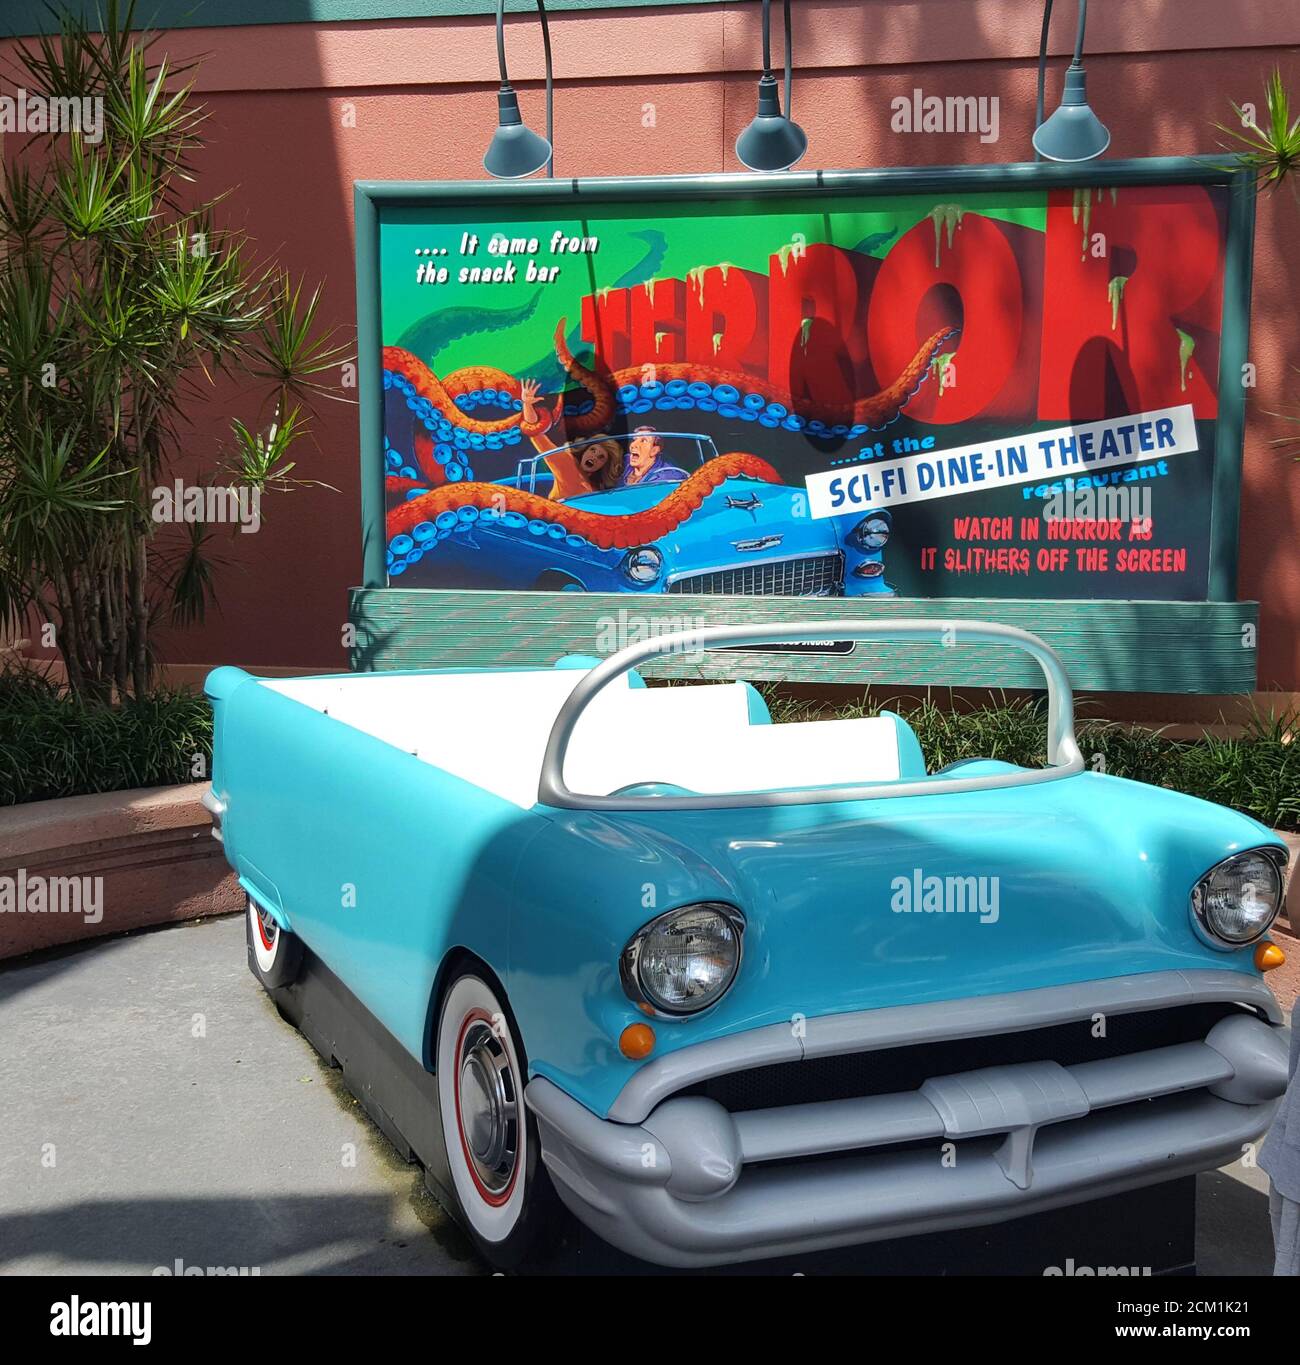 Un cartello pubblicitario e un'auto degli anni '50 per il ristorante Sci-Fi Dine-in Theatre a Disney's Hollywood Studios, Walt Disney World, Orlando, Florida, USA Foto Stock